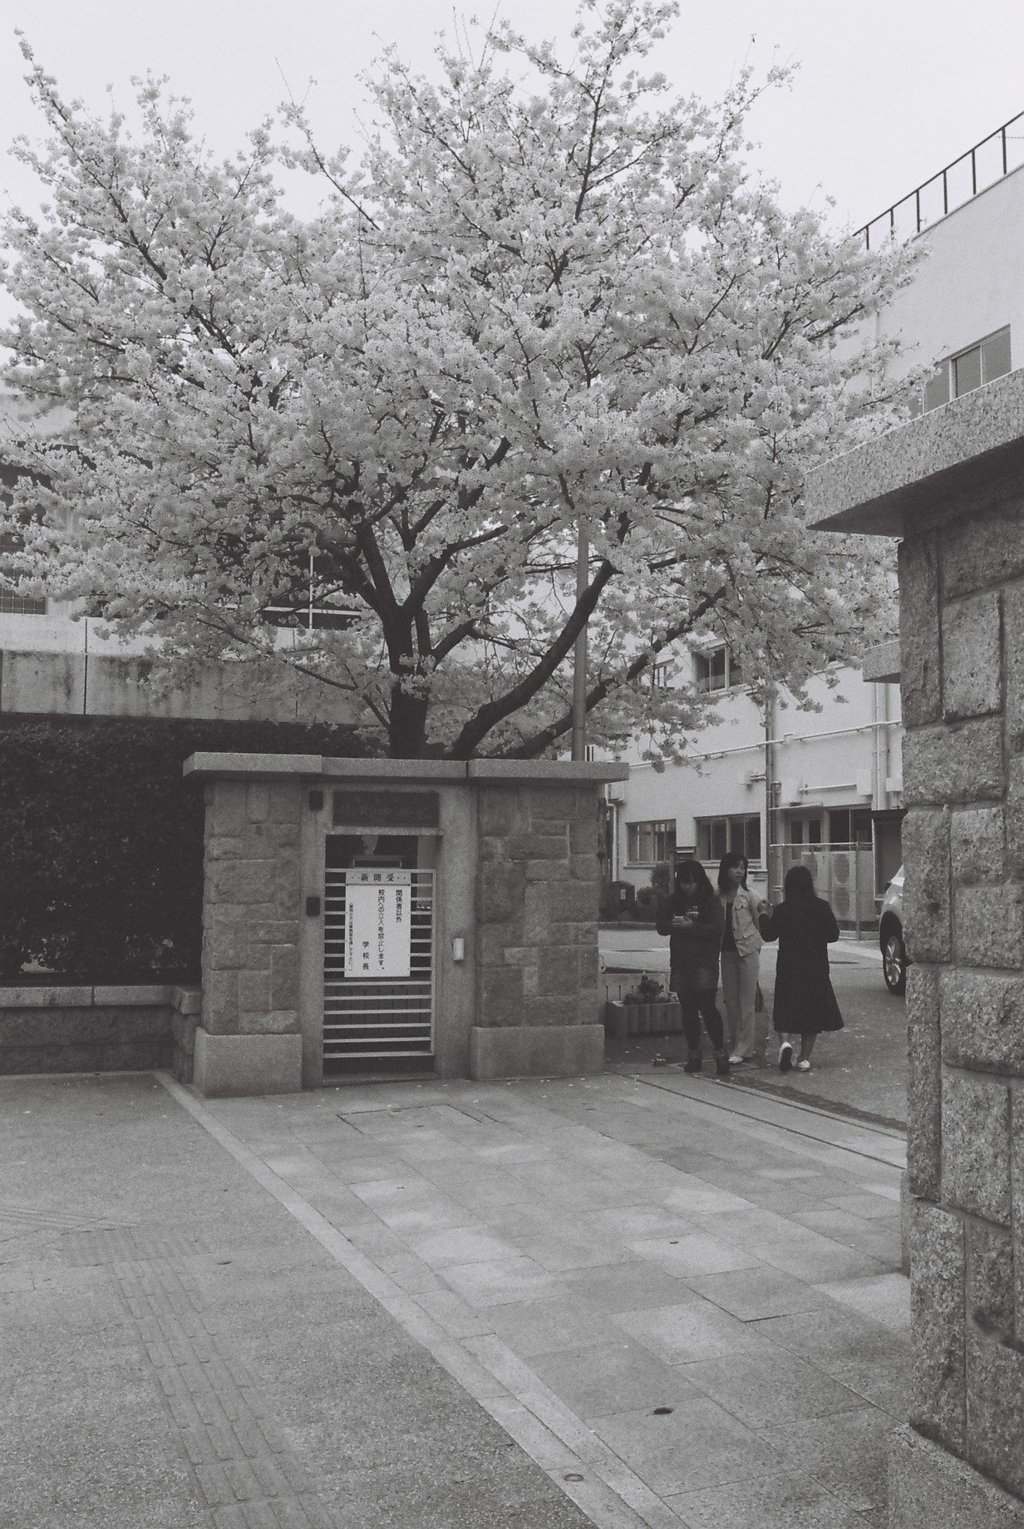 学び舎の桜